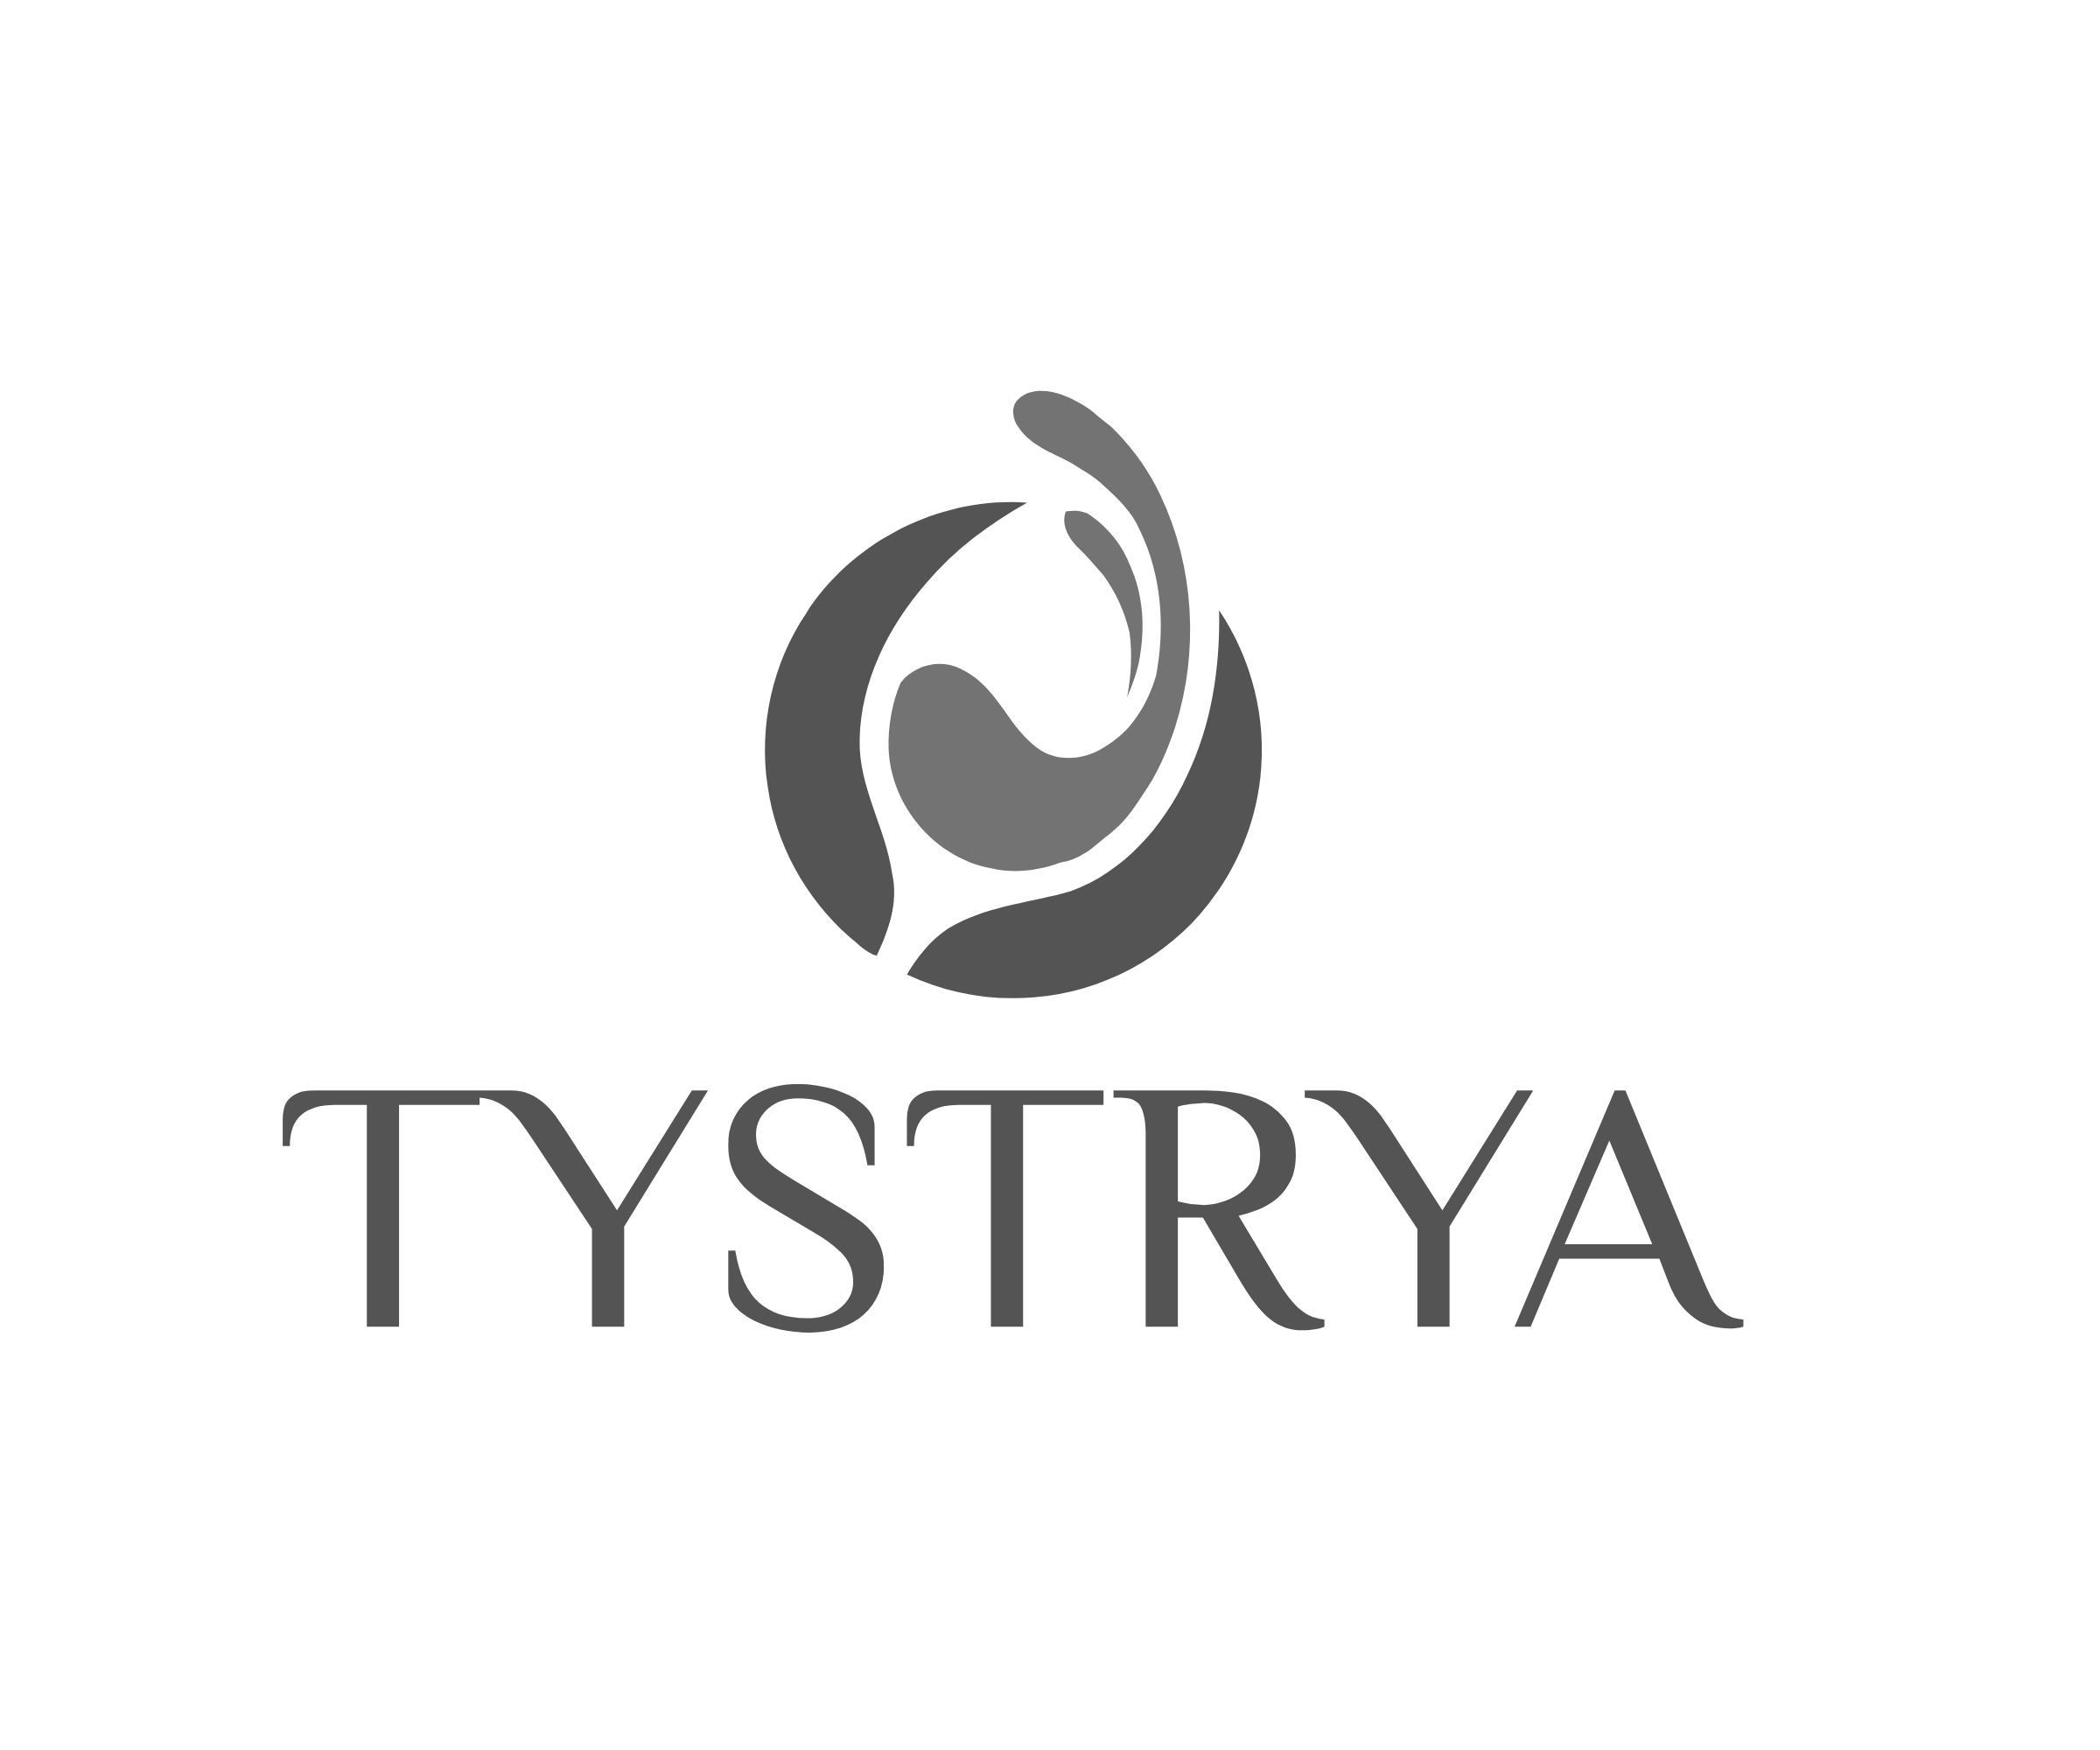 Tystrya